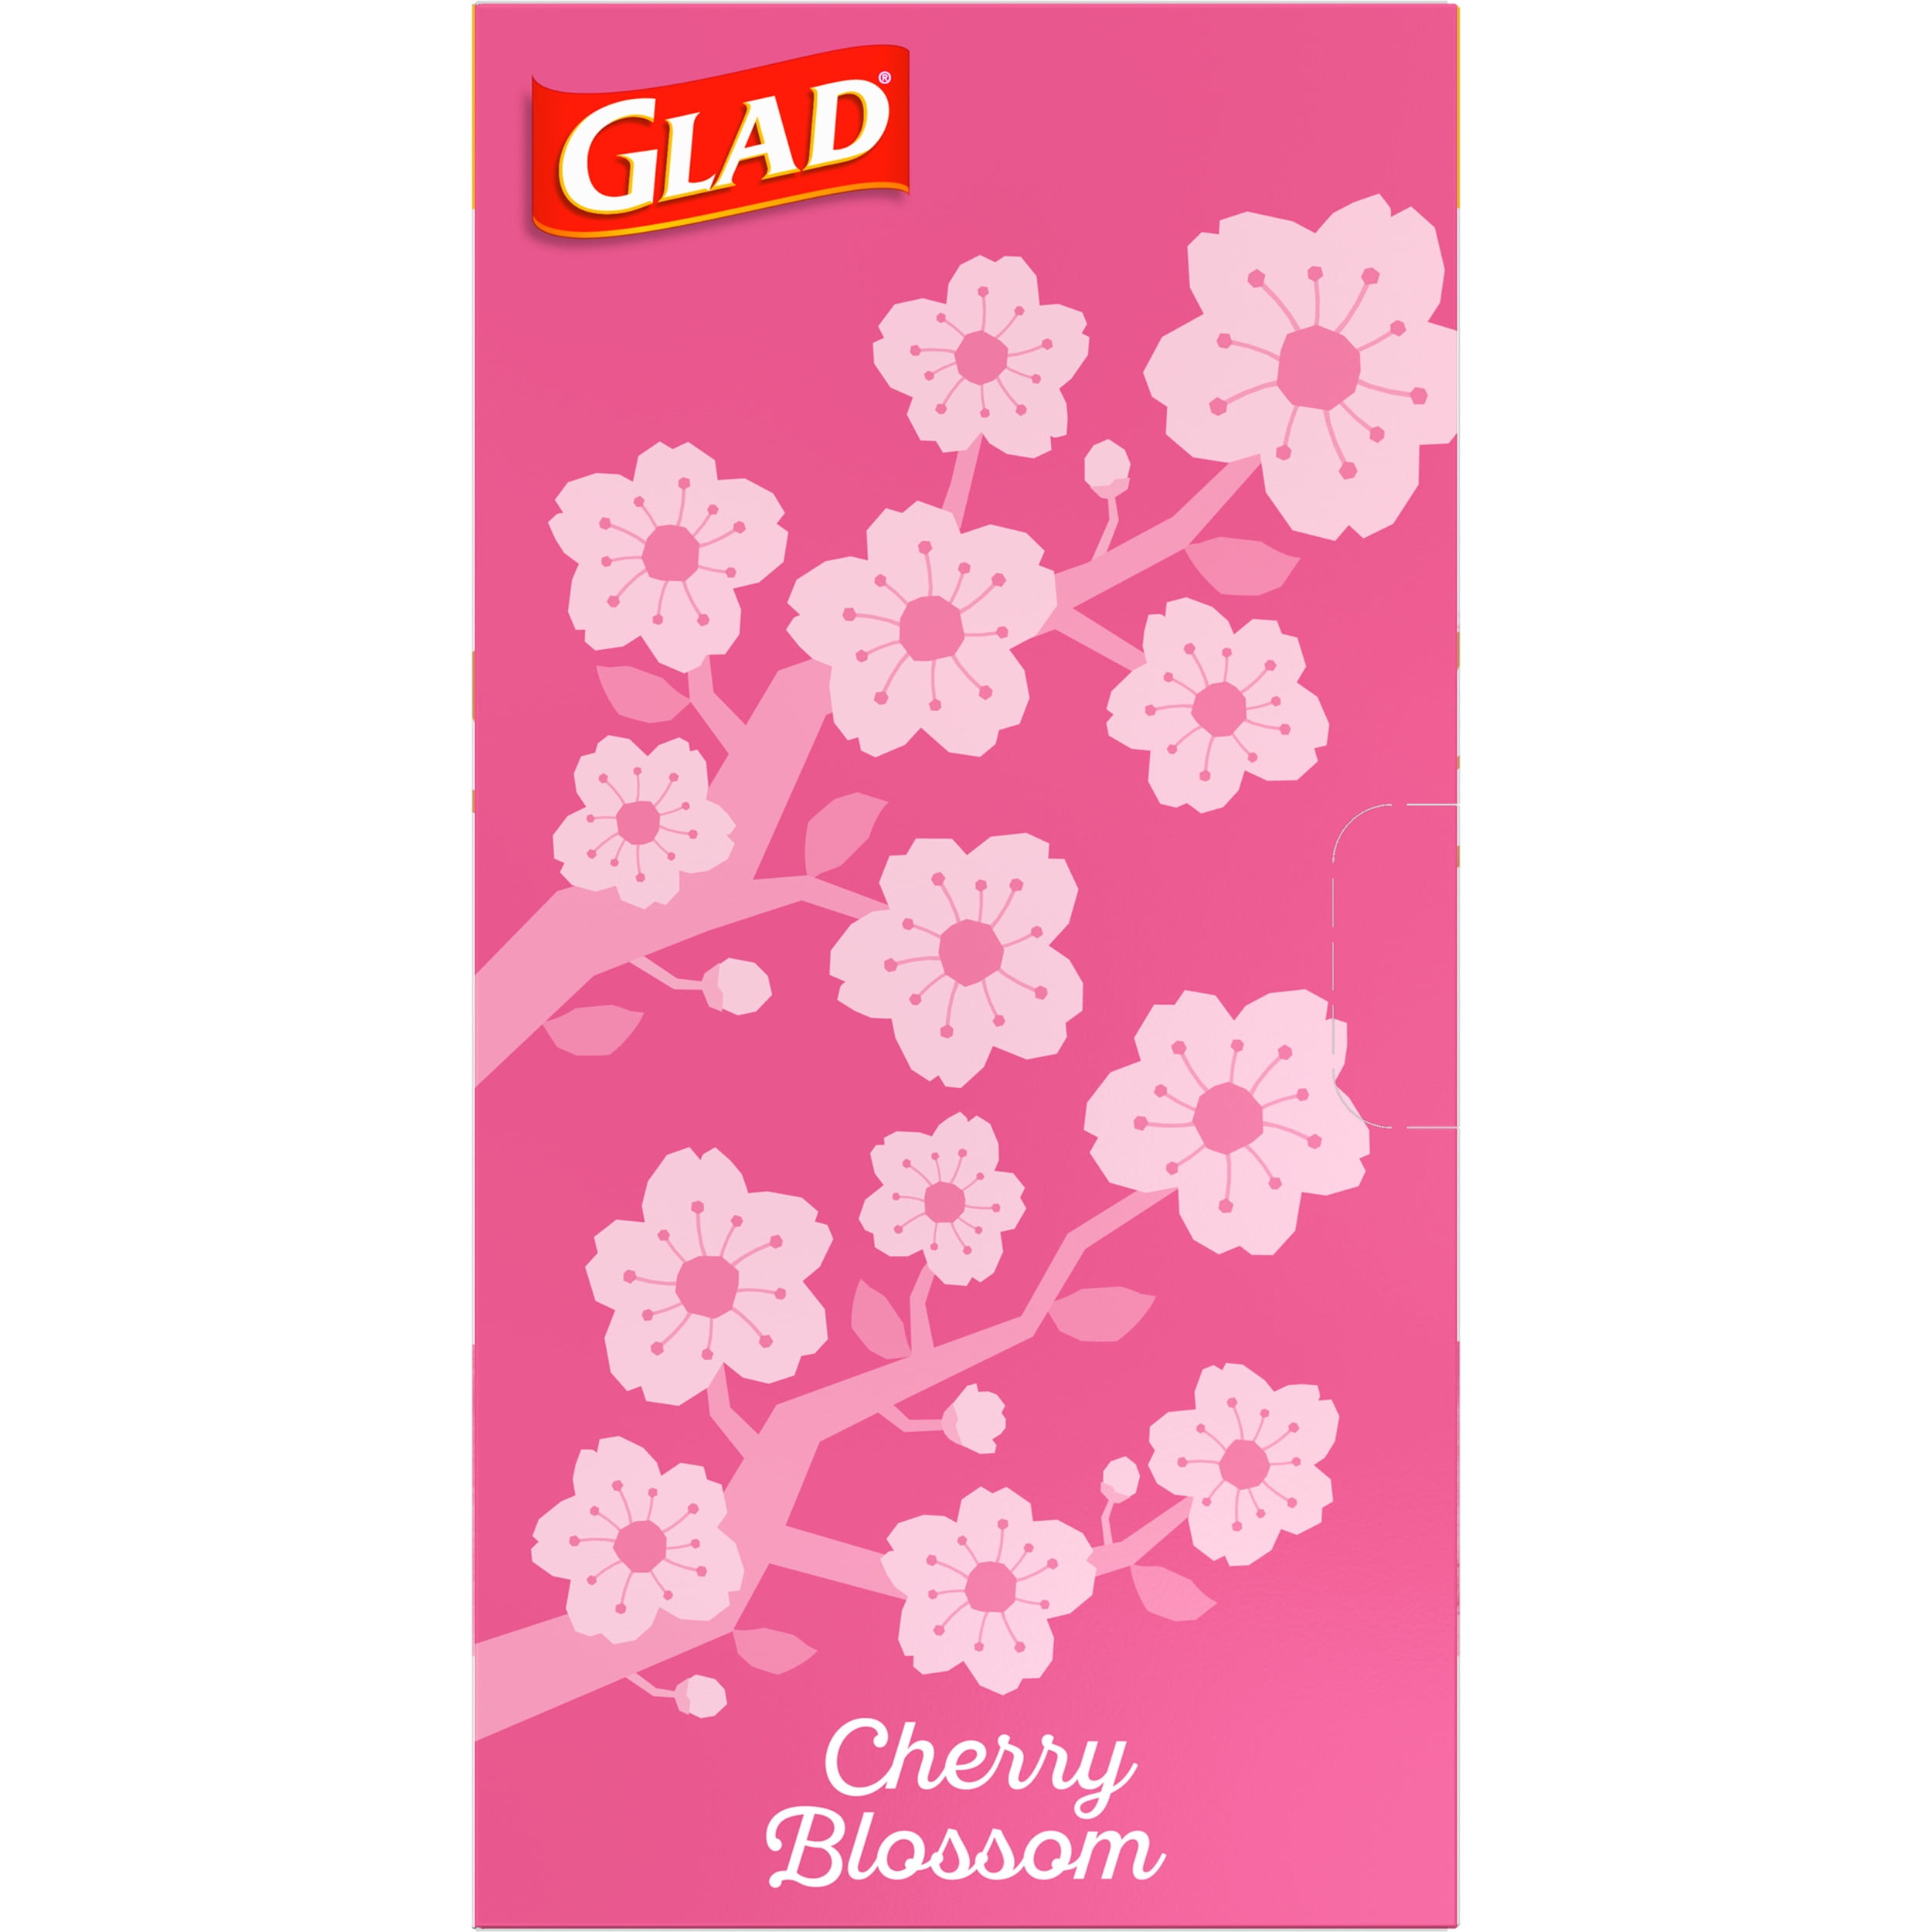 Glad fashion ad promotes pink cherry blossom trash bag